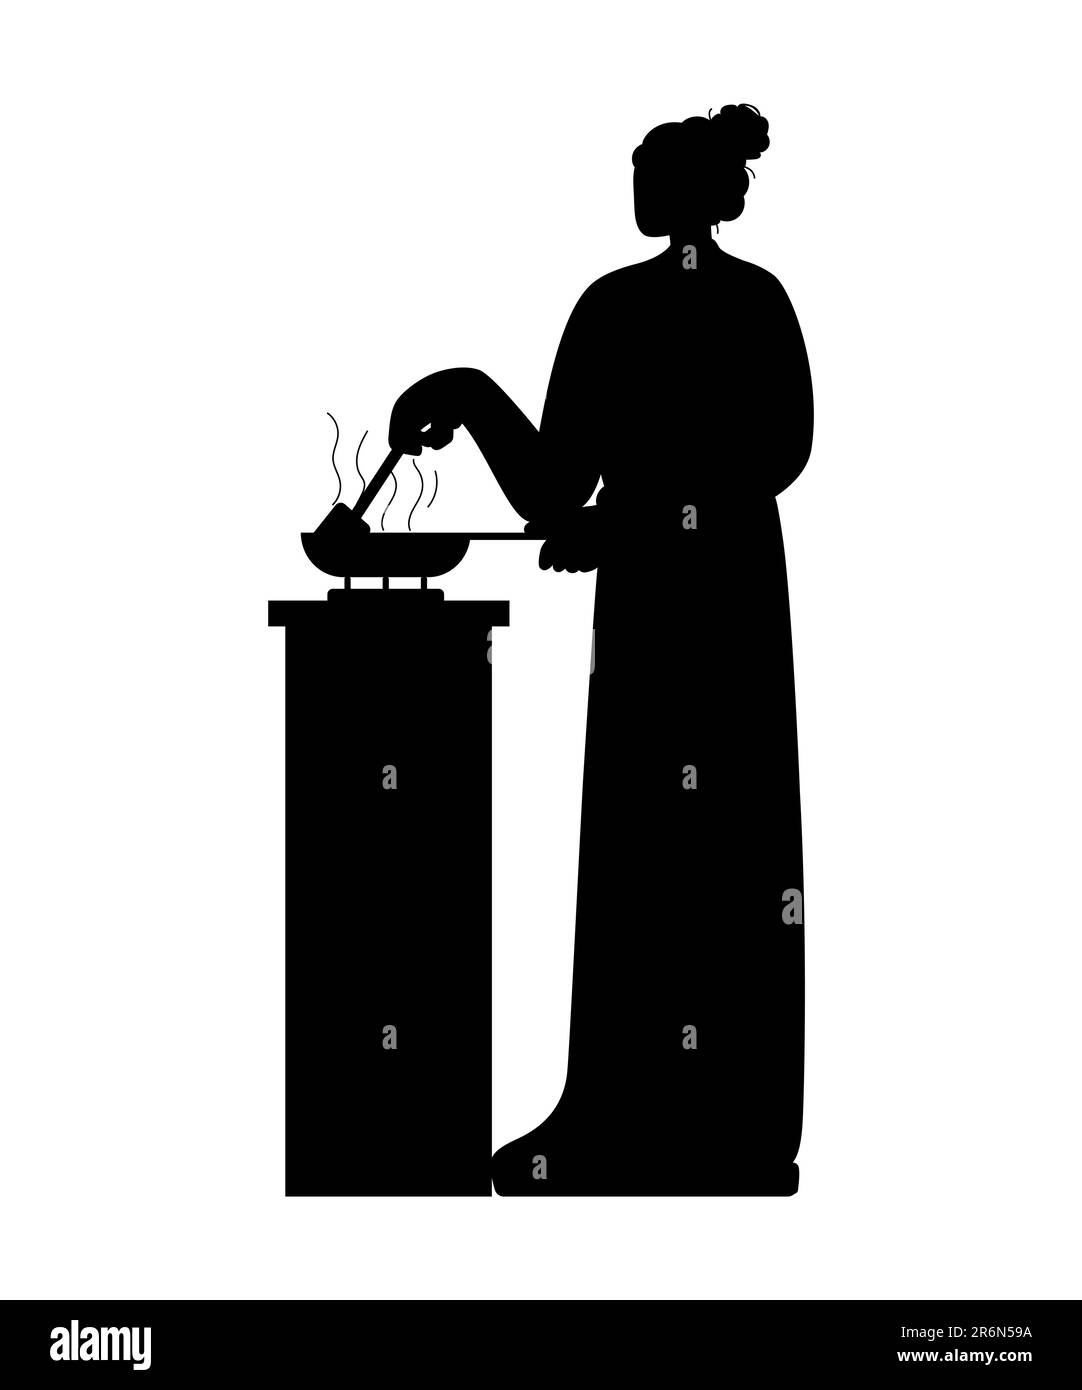 Silhouette noire d'une femme faisant un plat dans une poêle, femme chef cuisant dans la cuisine tout en utilisant une spatule, illustration vectorielle Illustration de Vecteur